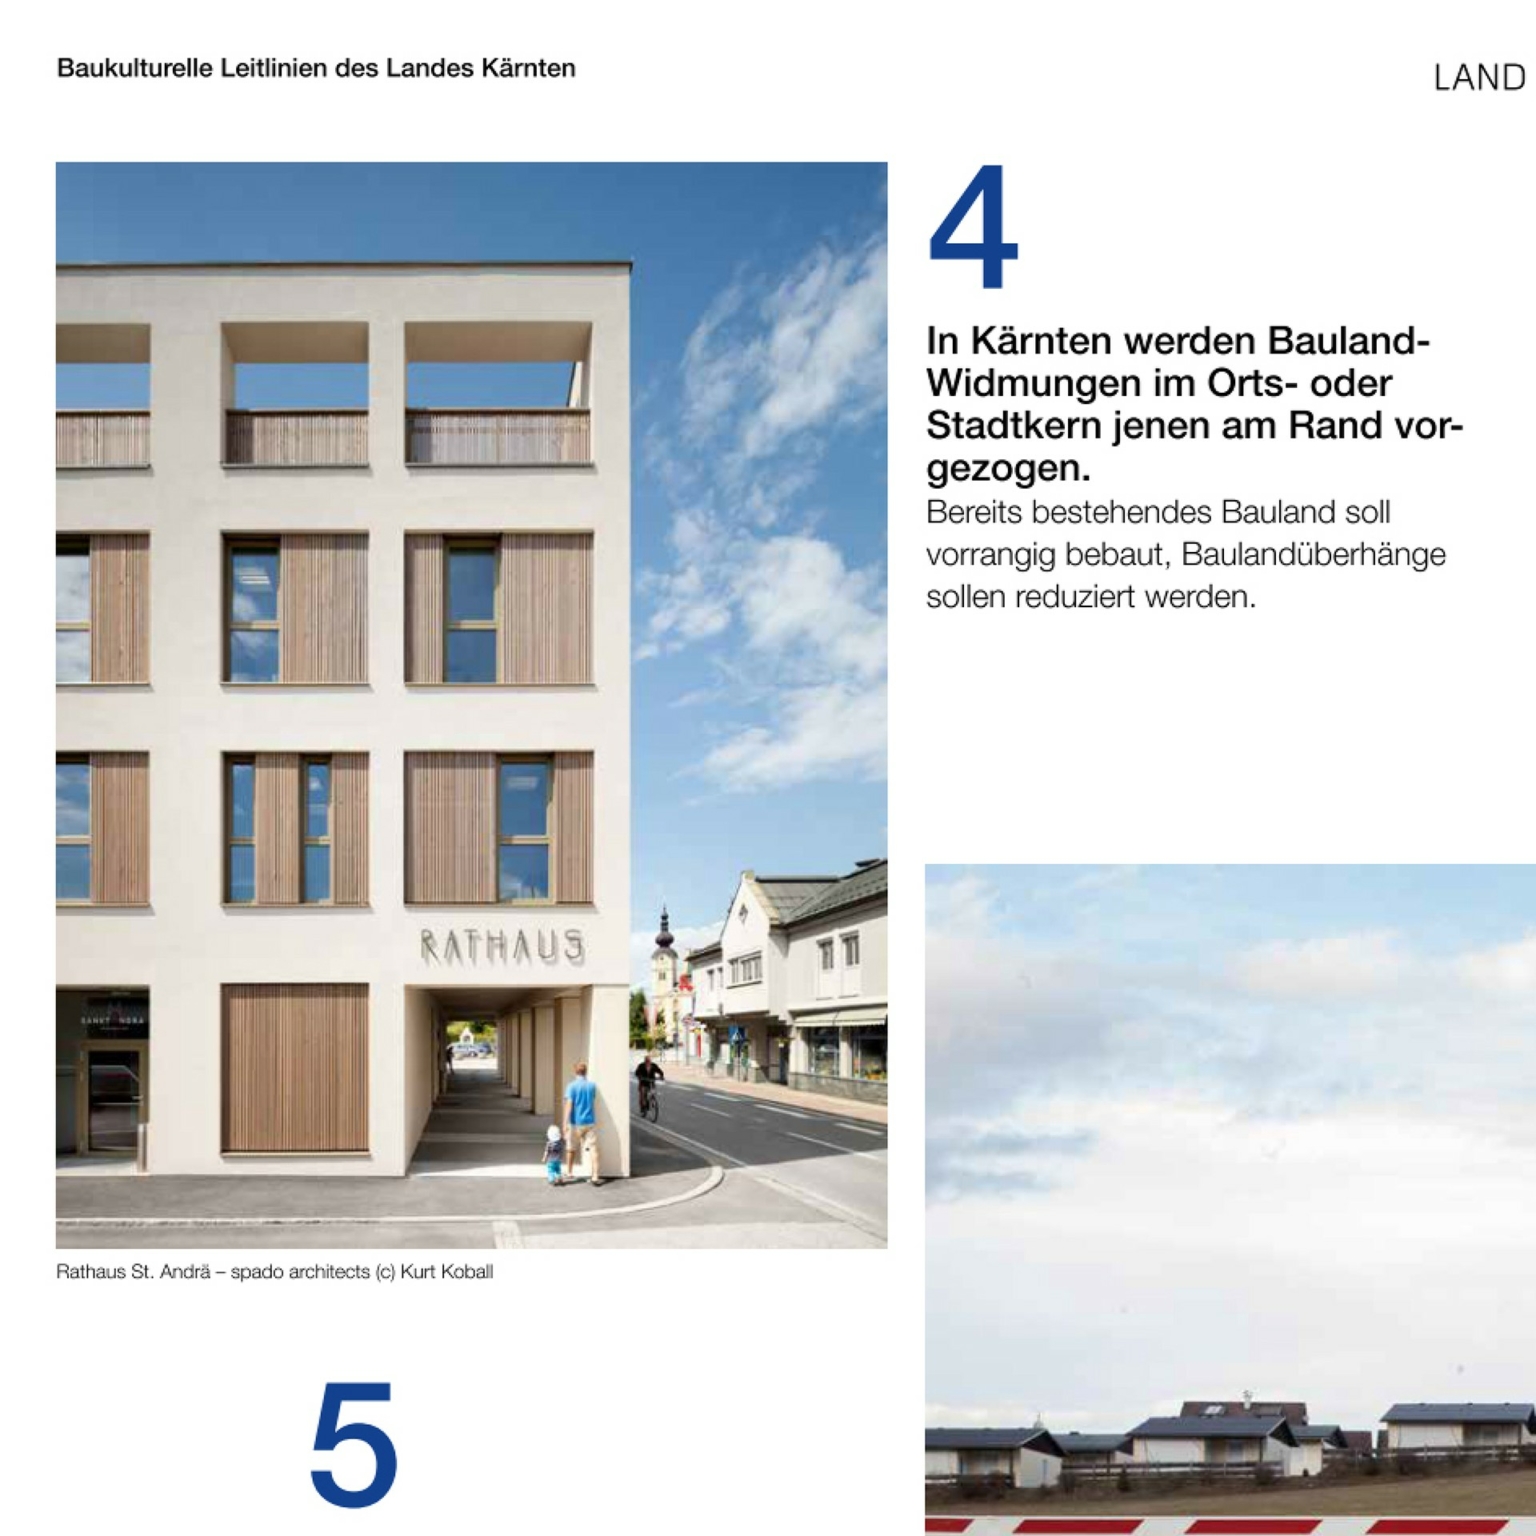 Rathaus Sankt Andrä in der aktuellen Broschüre der Baukulturellen Leitlinien des Landes Kärnten